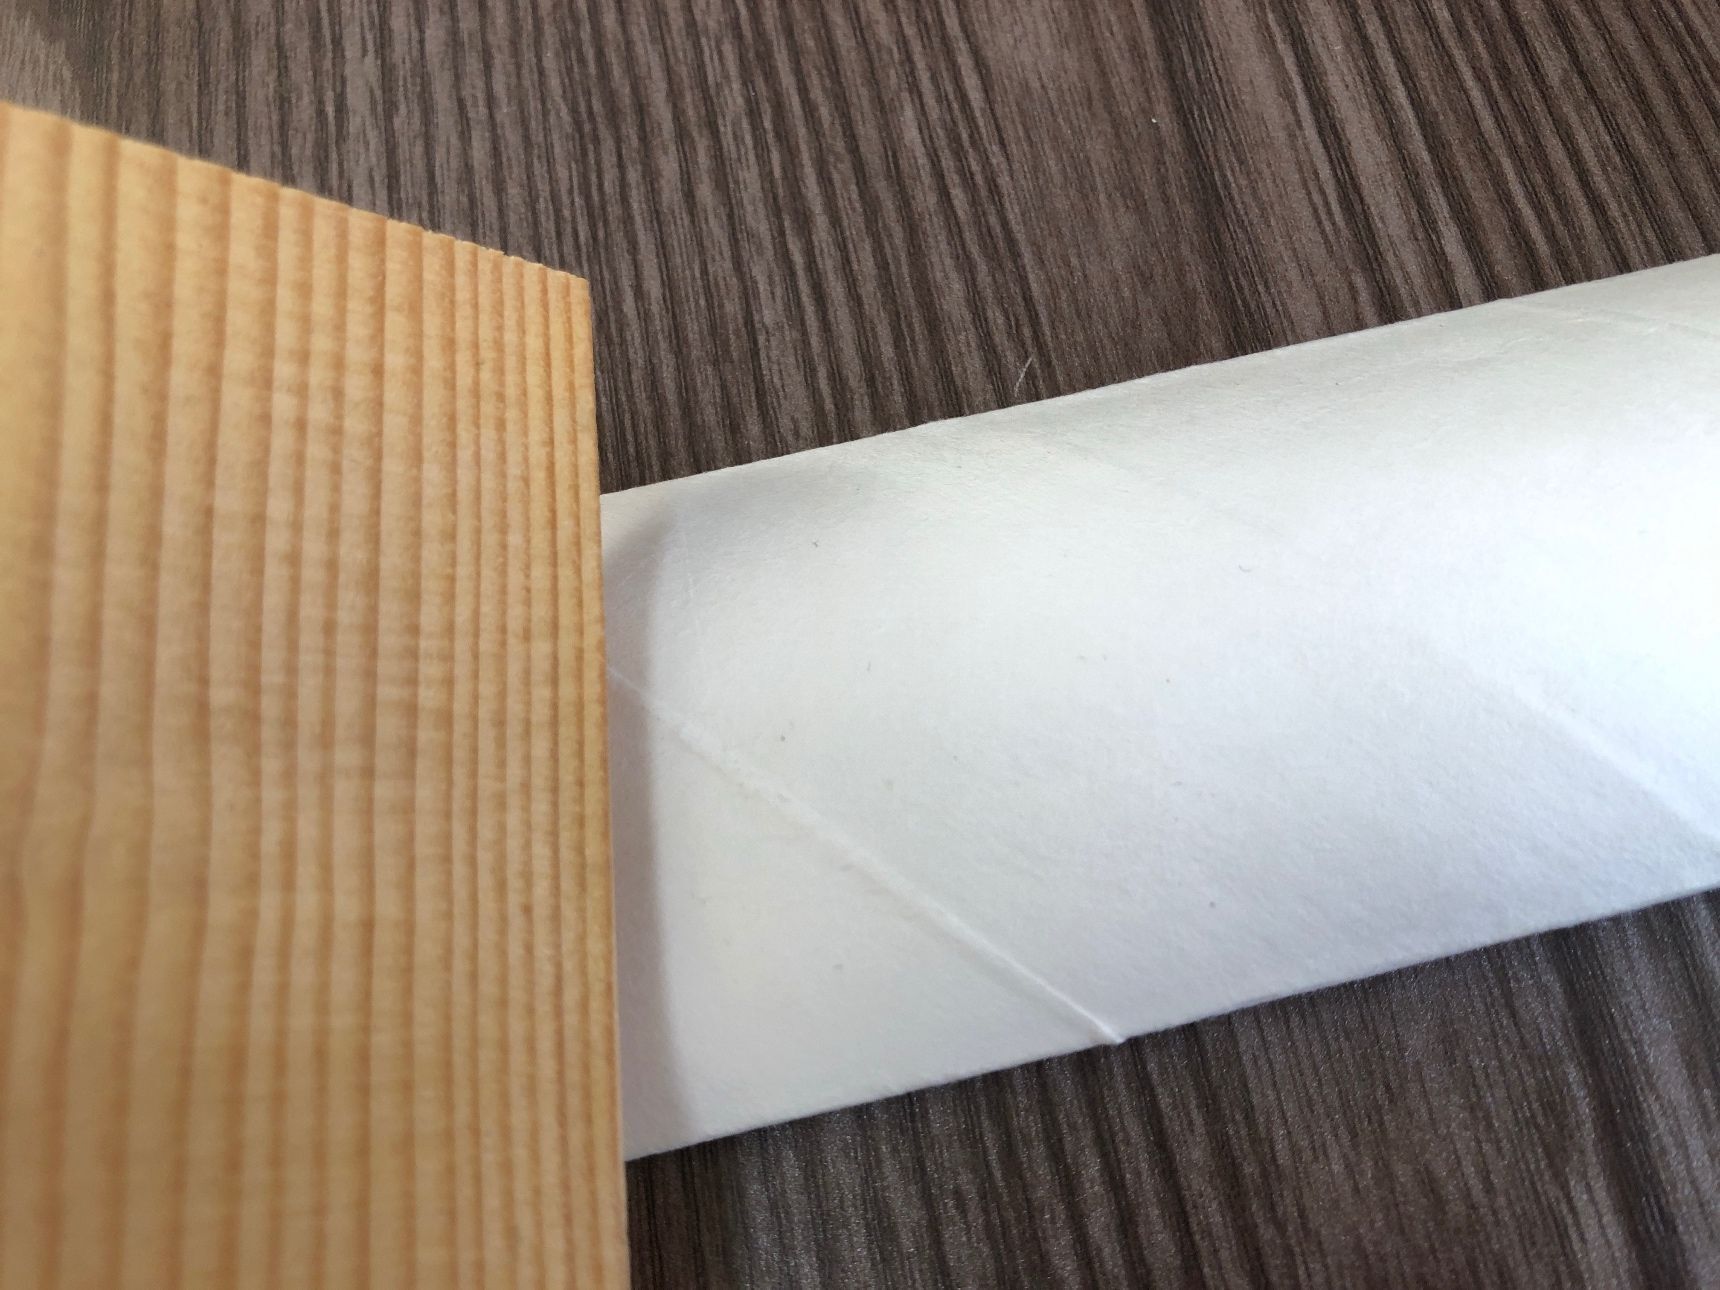 このように紙を折る時に使います